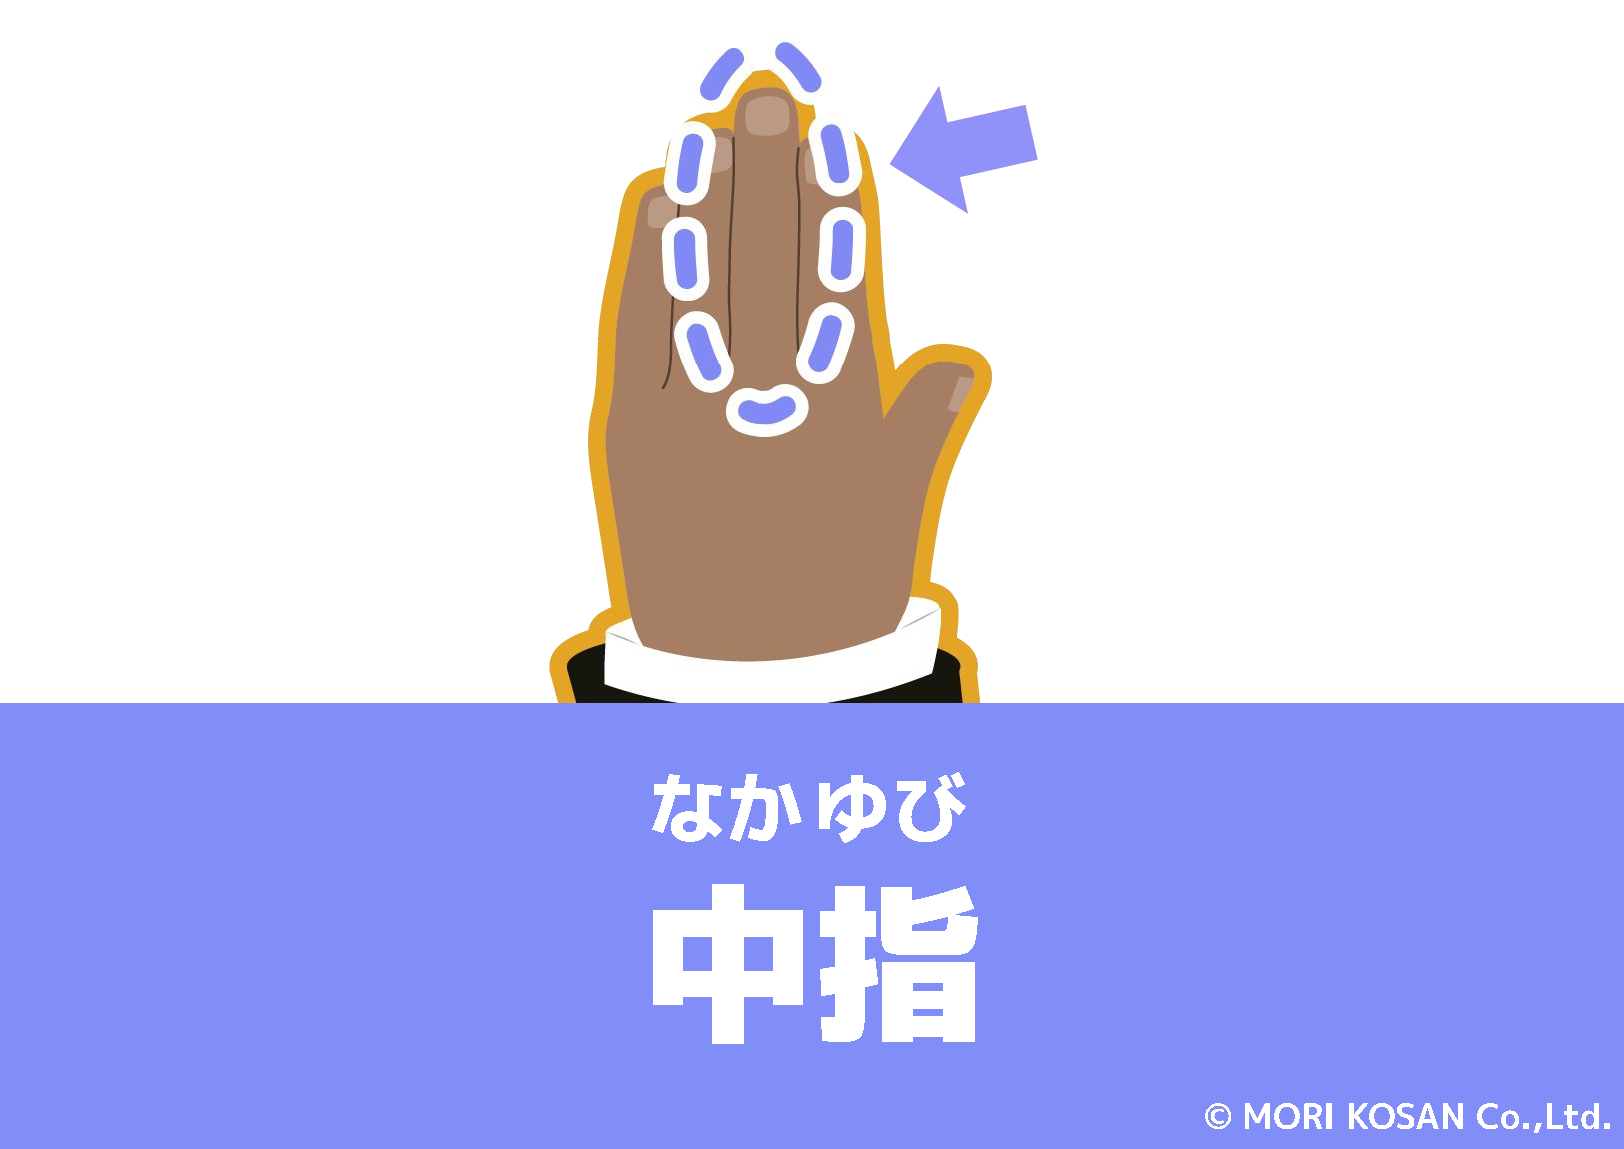 【WA.101】今日の日本語「中指」